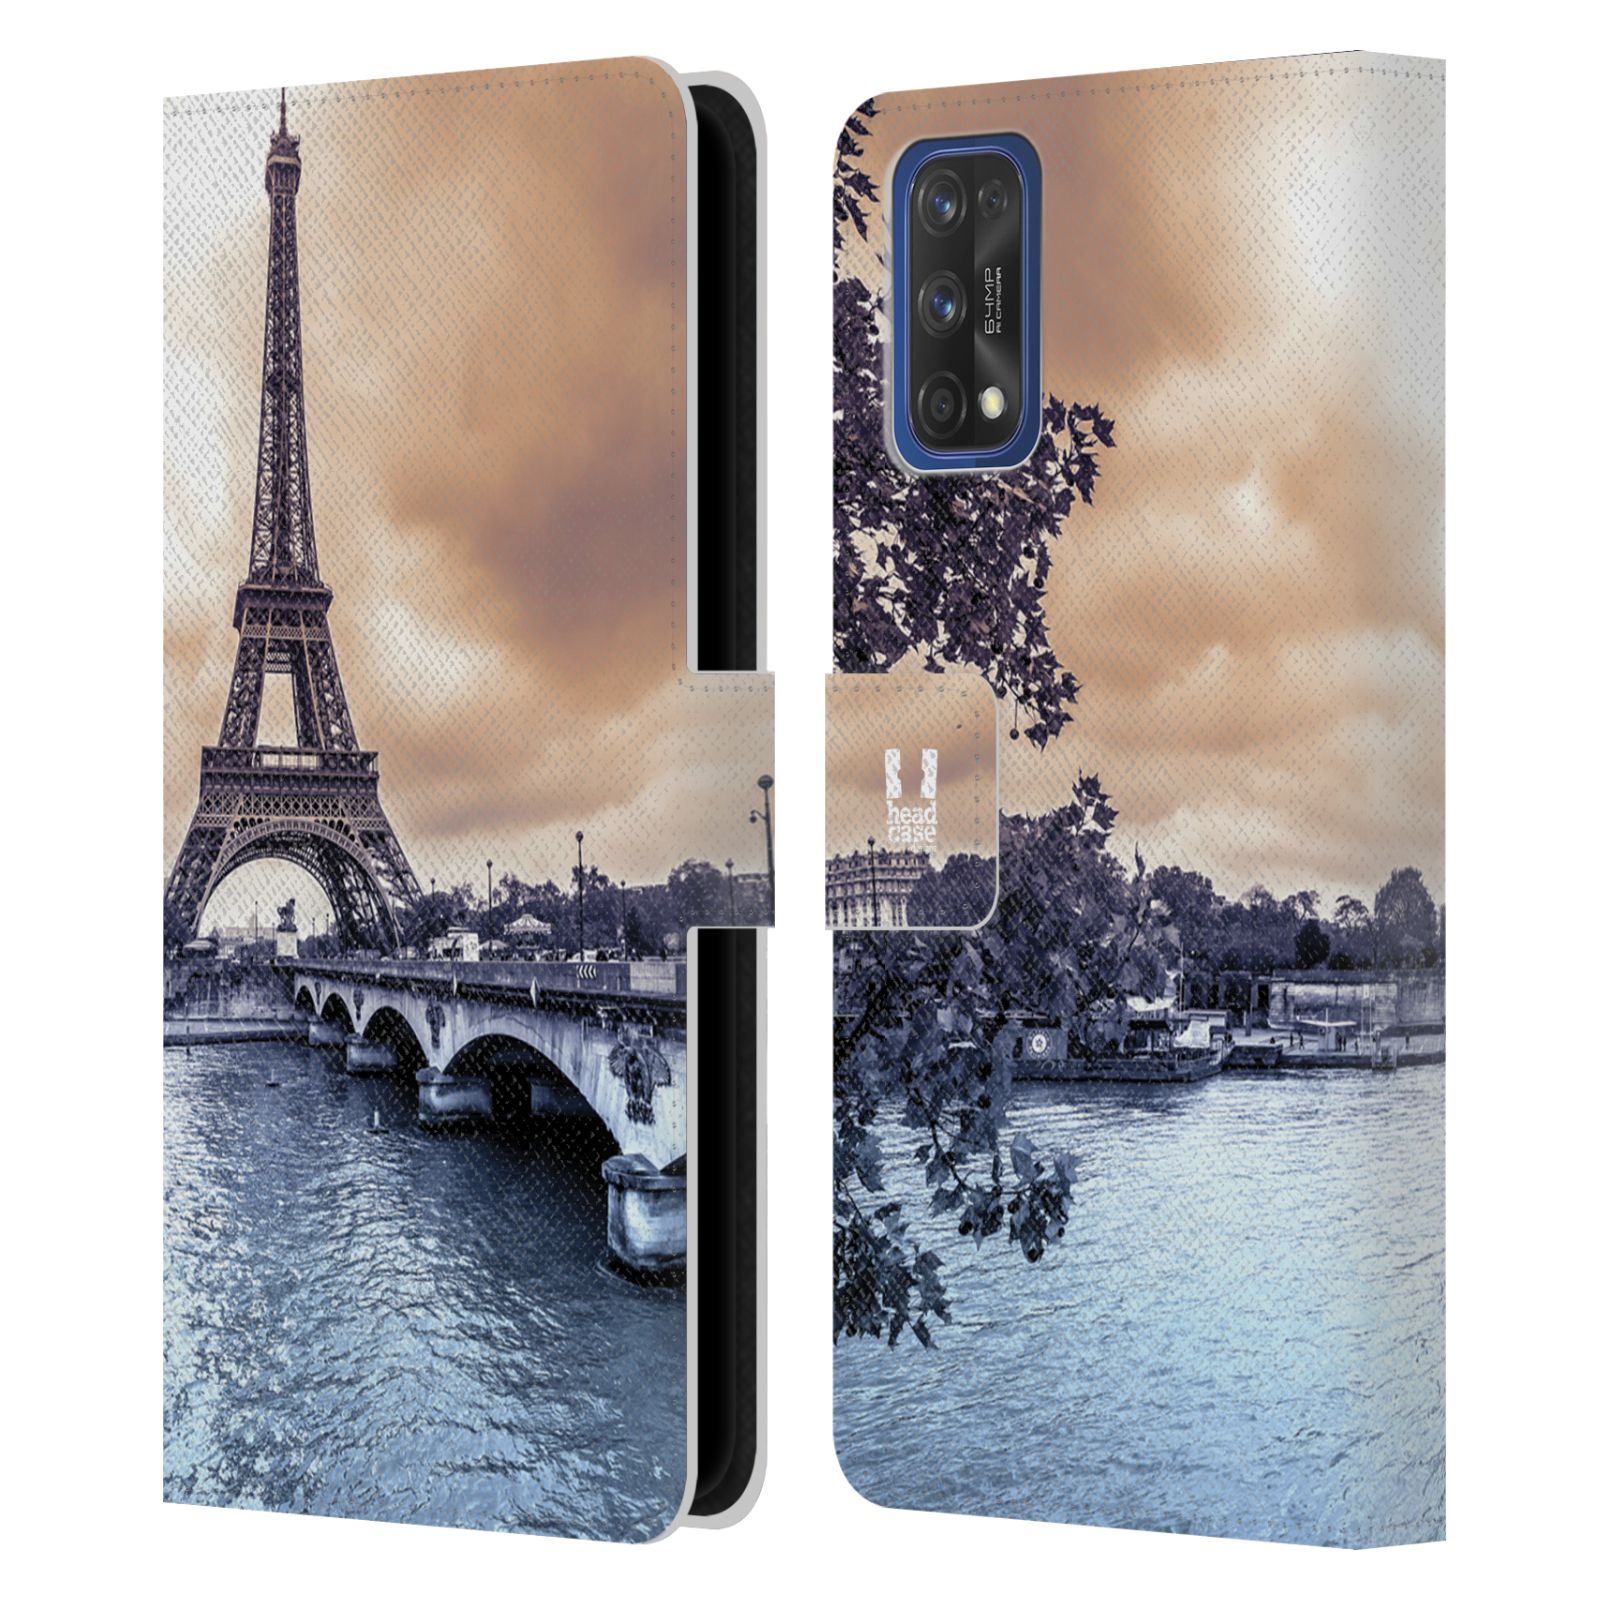 Pouzdro pro mobil Realme 7 PRO - HEAD CASE - Eiffelova věž Paříž - Francie